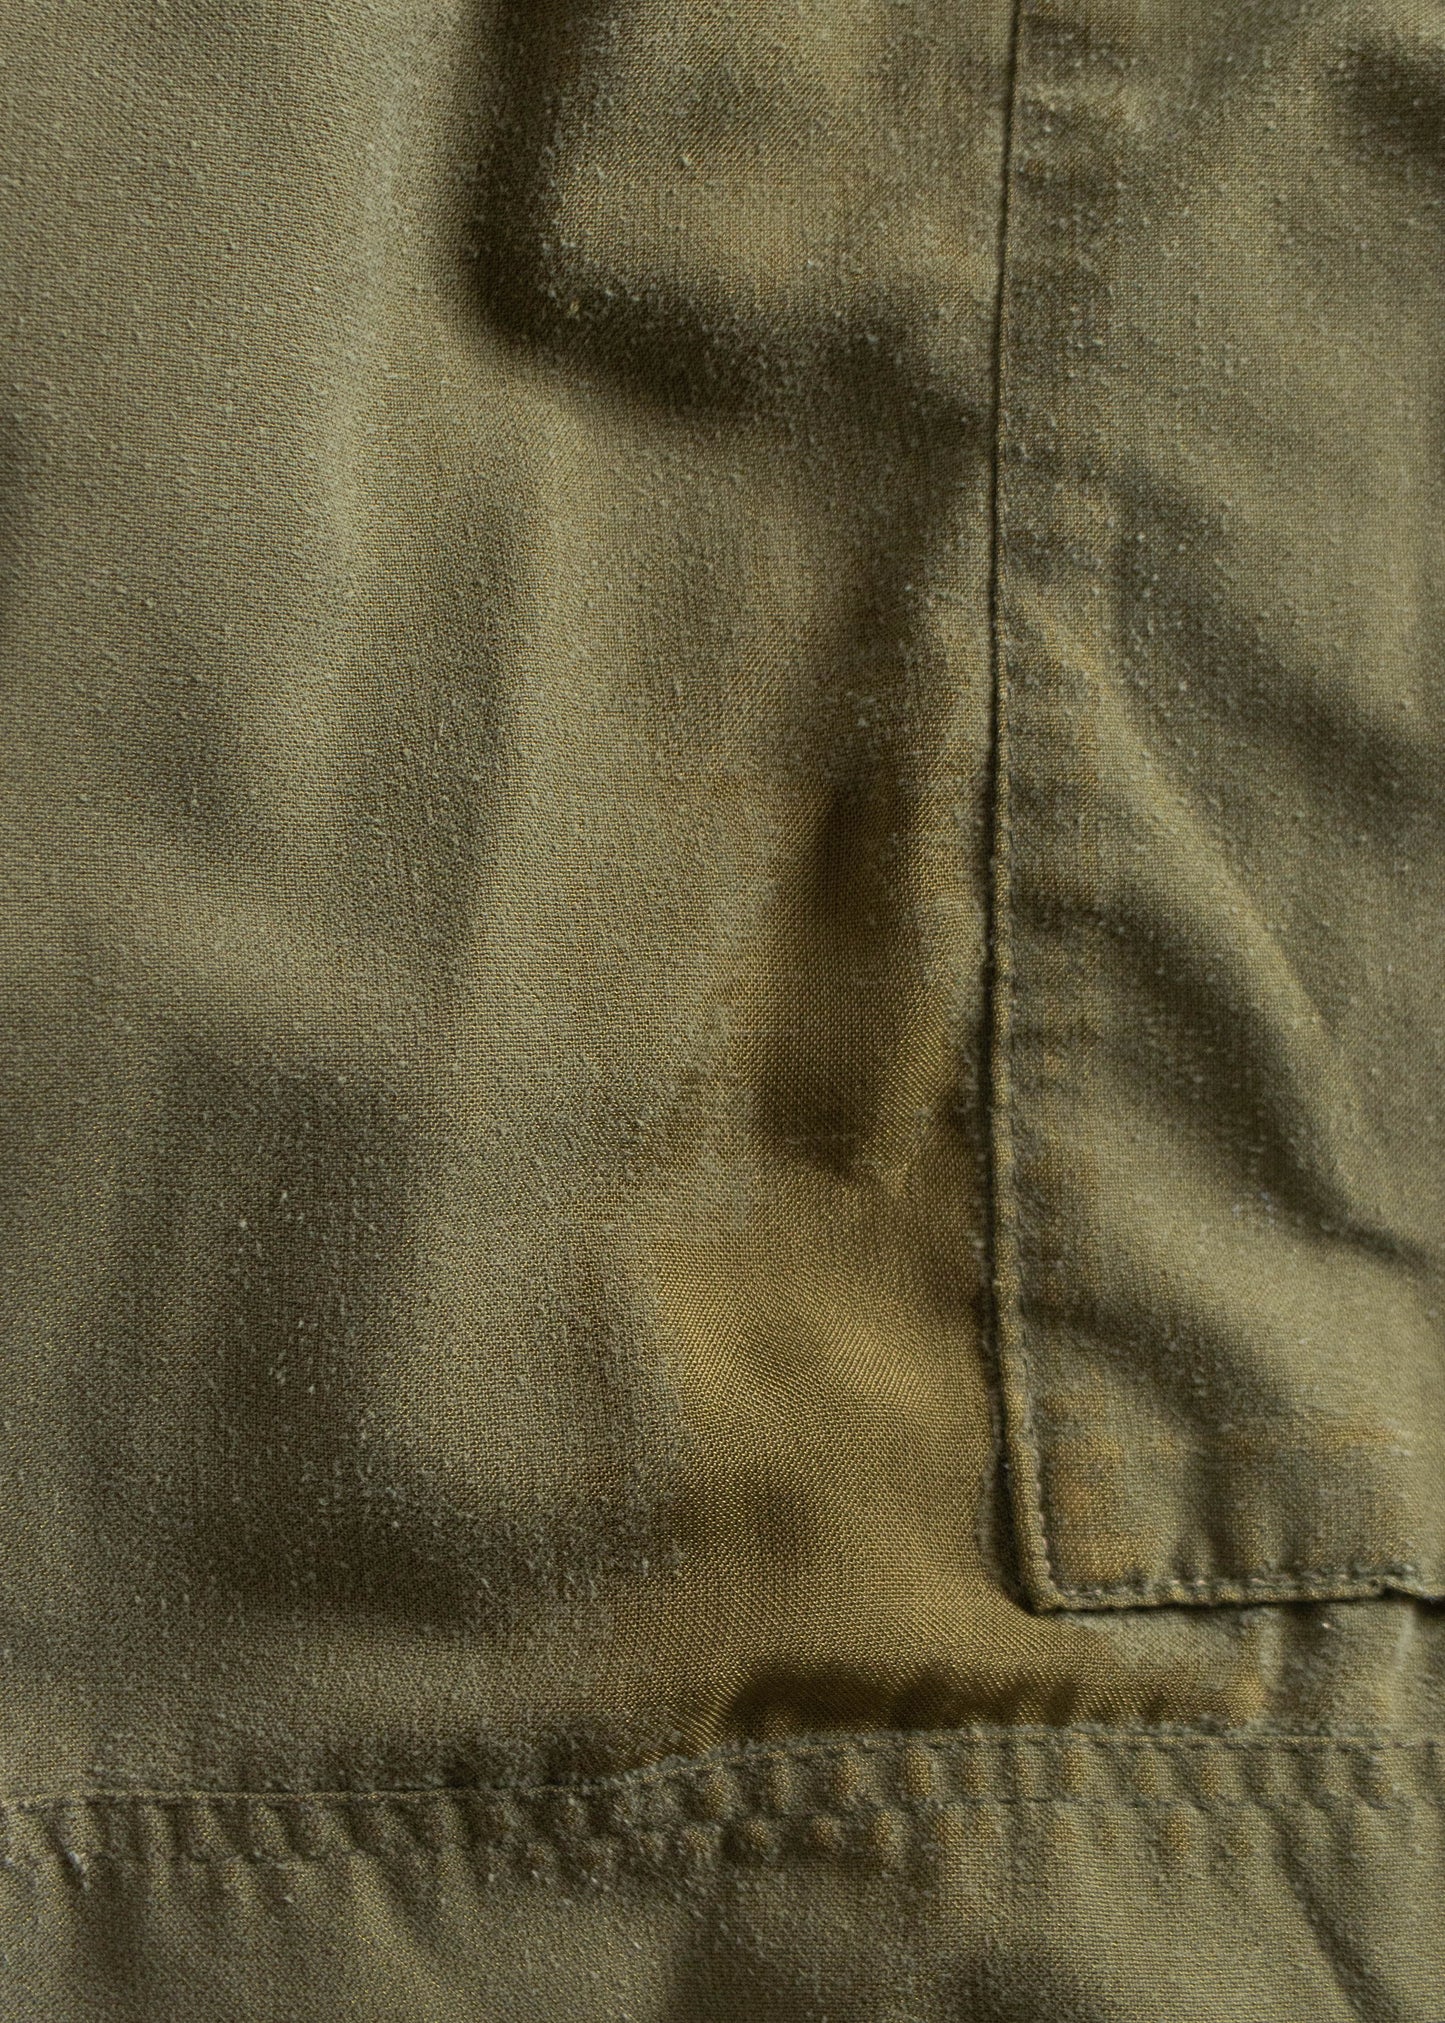 Vintage 1990s Military Cargo Pants Size Women's 28 Men's 31